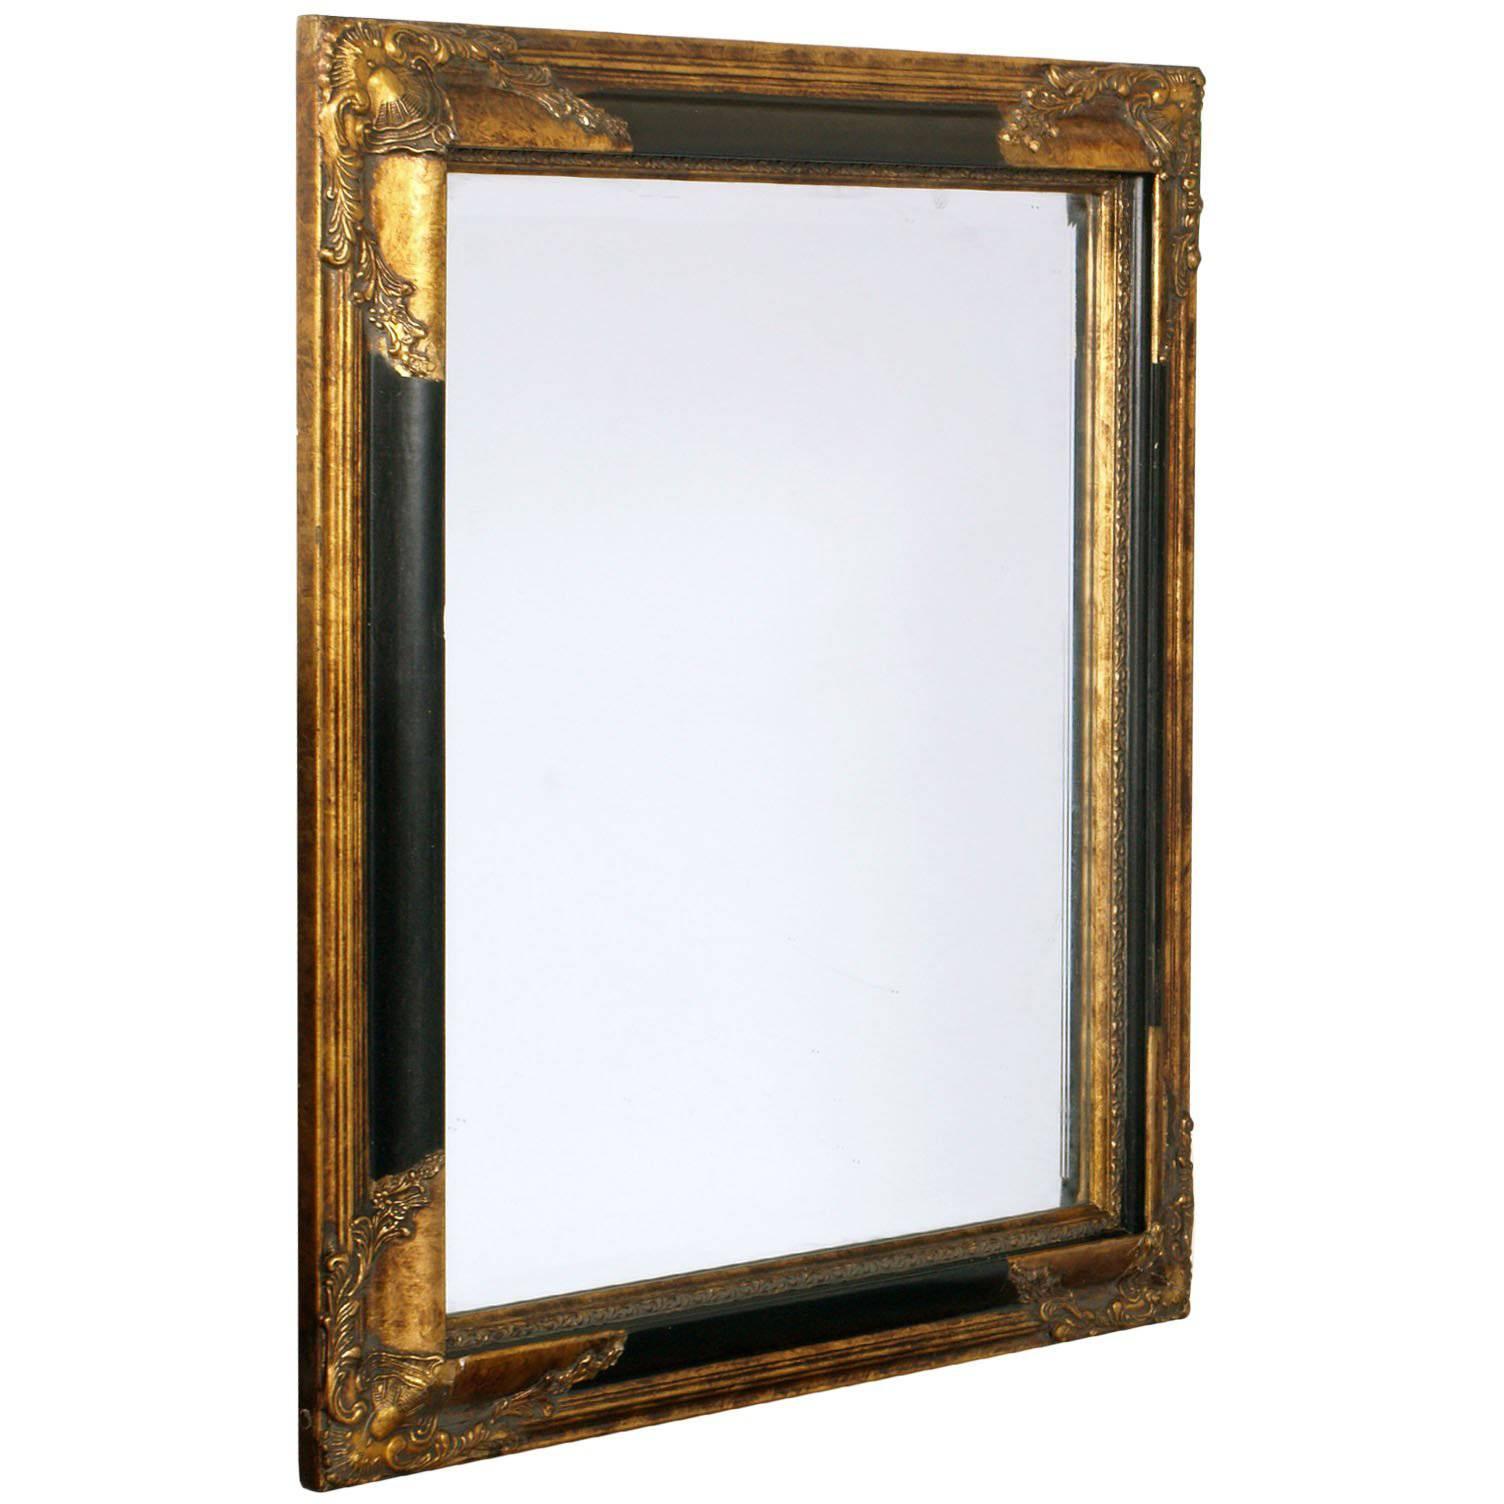 Art Deco Mirror with Carved Golden Black Frame of the Florentine Craftsmanship